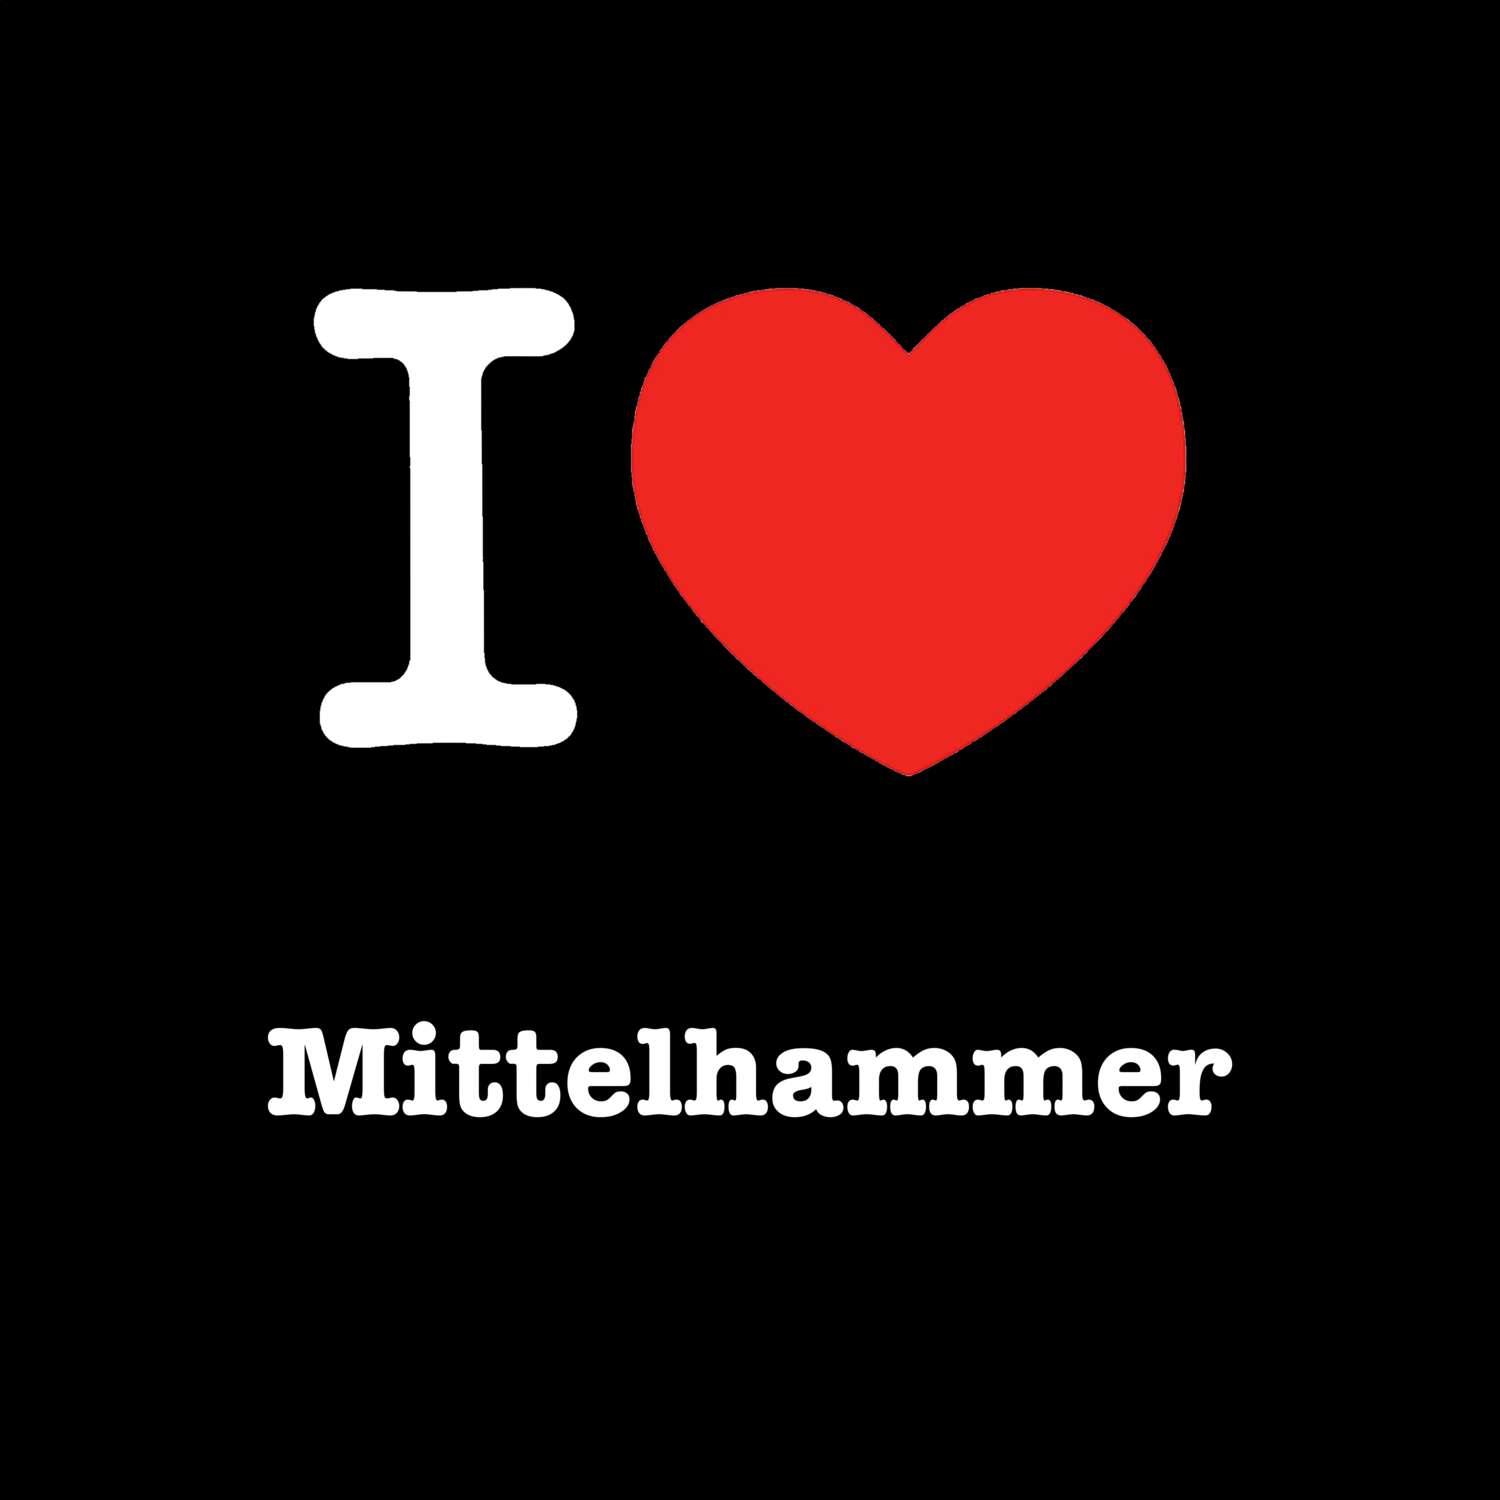 Mittelhammer T-Shirt »I love«